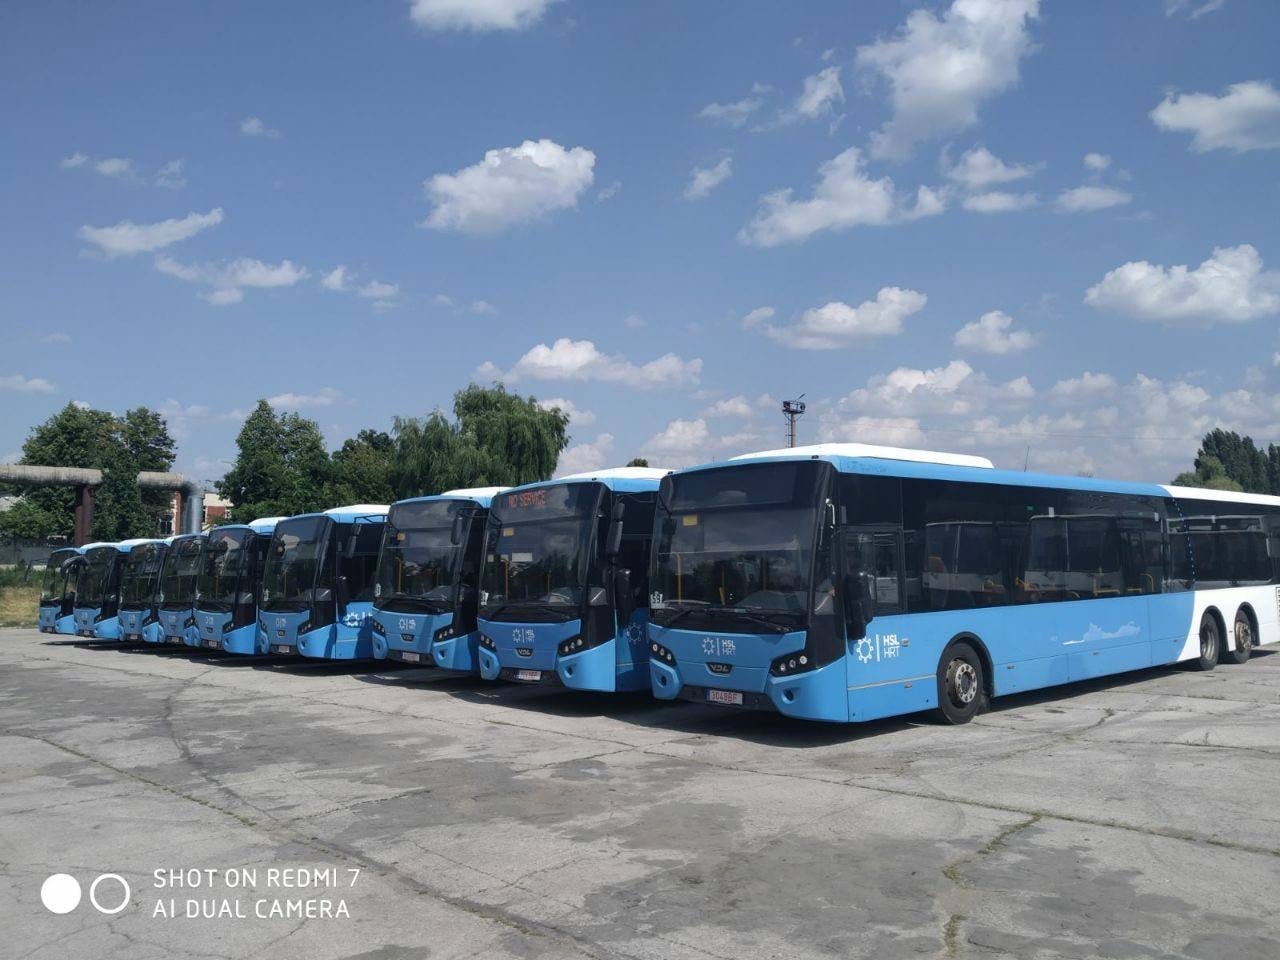 В Кишинев доставили еще девять автобусов с пробегом из Нидерландов (ФОТО)